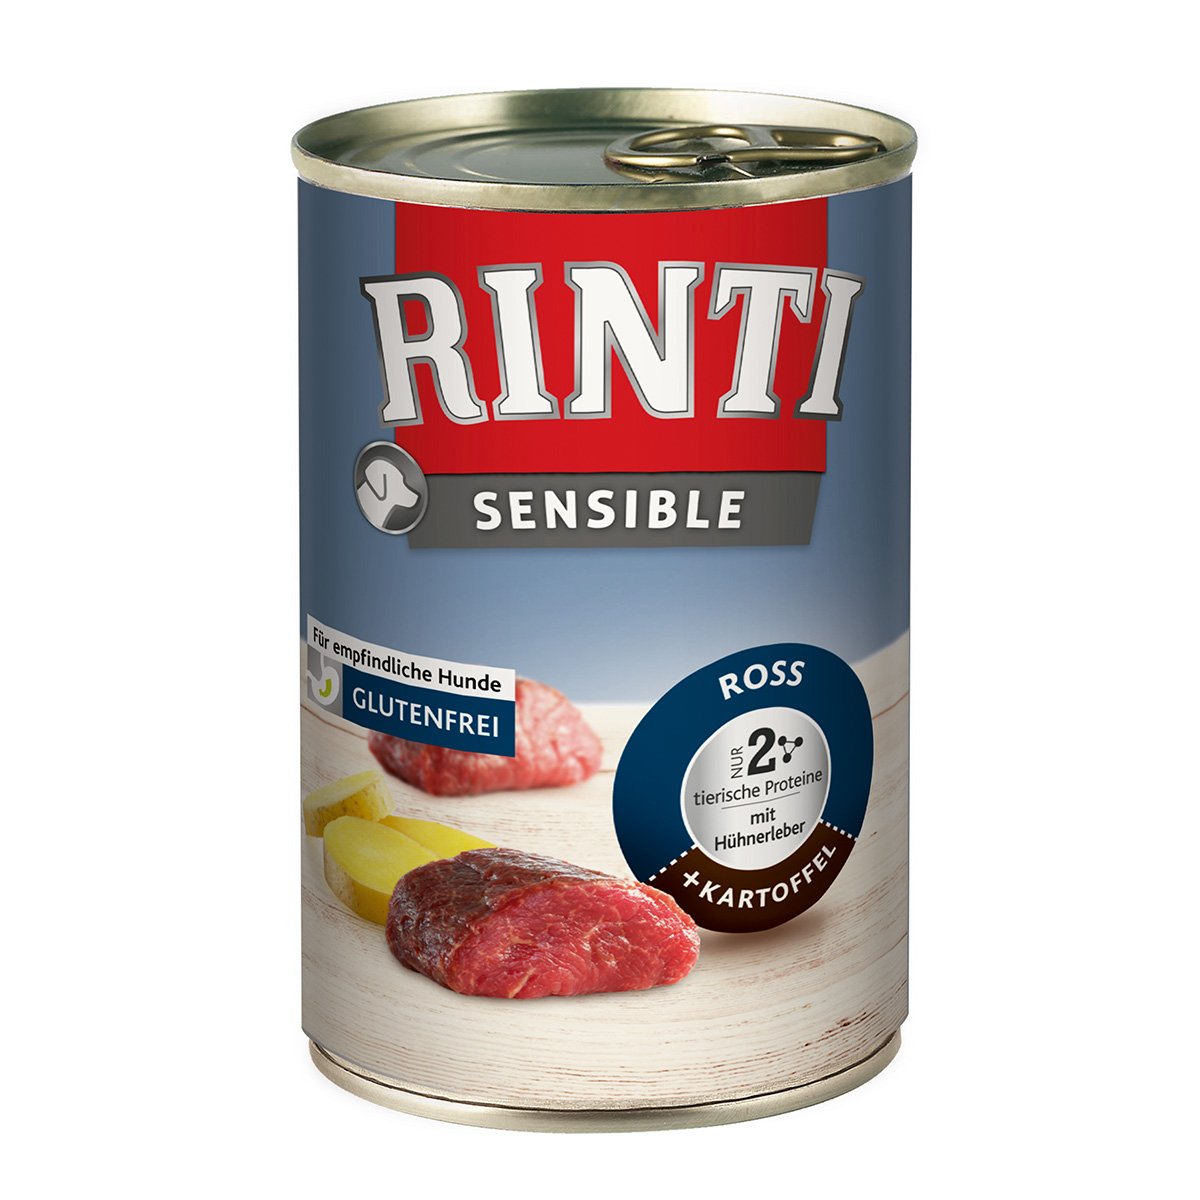 Rinti Sensible Ross & Hühnerleber & Kartoffel 24x400g von Rinti